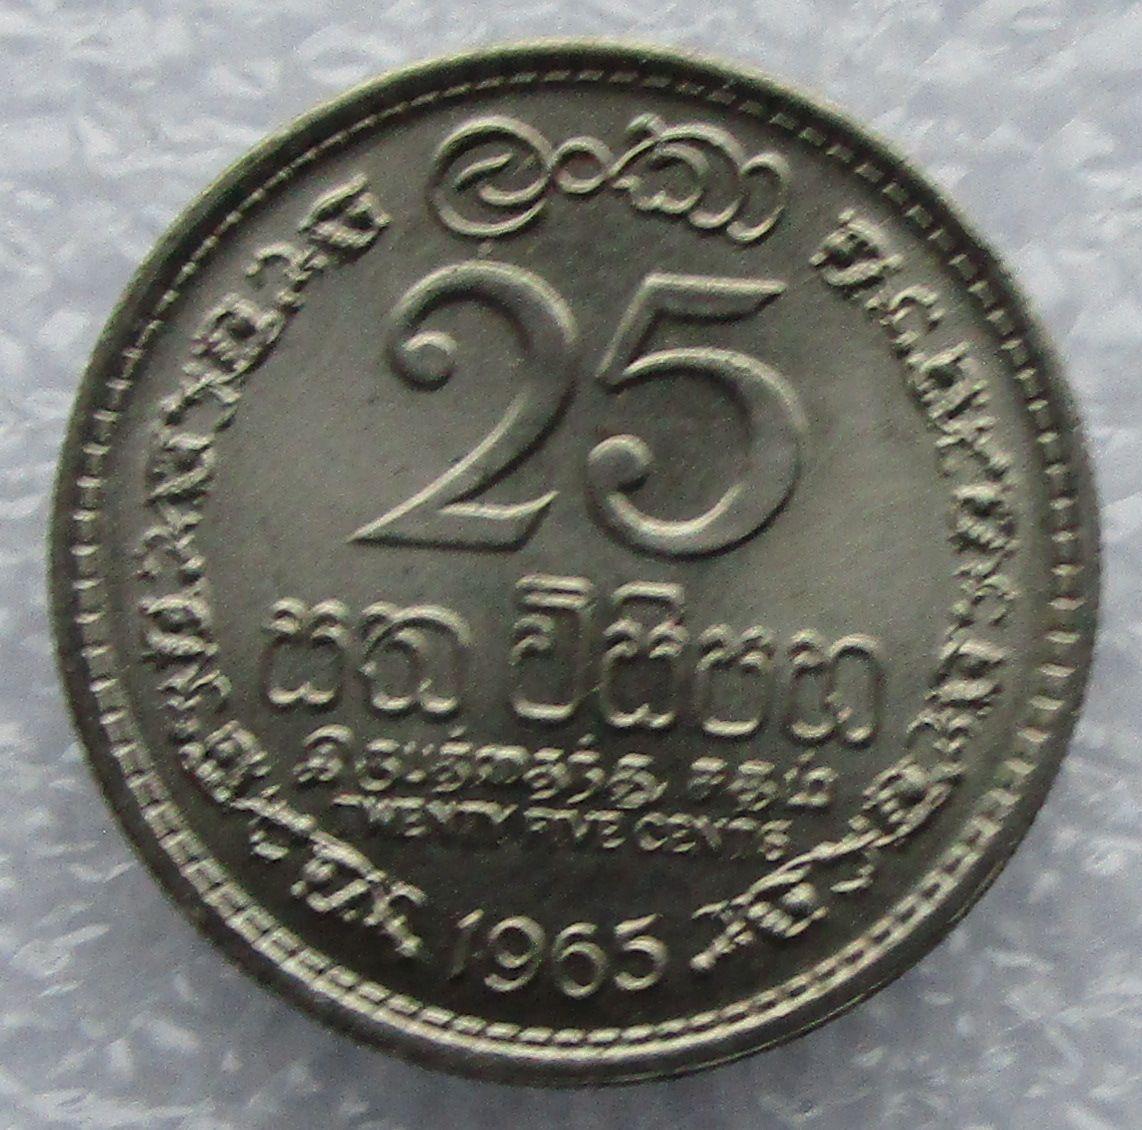 Цейлон, 25 центов - 1965. UNC. Штемпельный блеск. 1